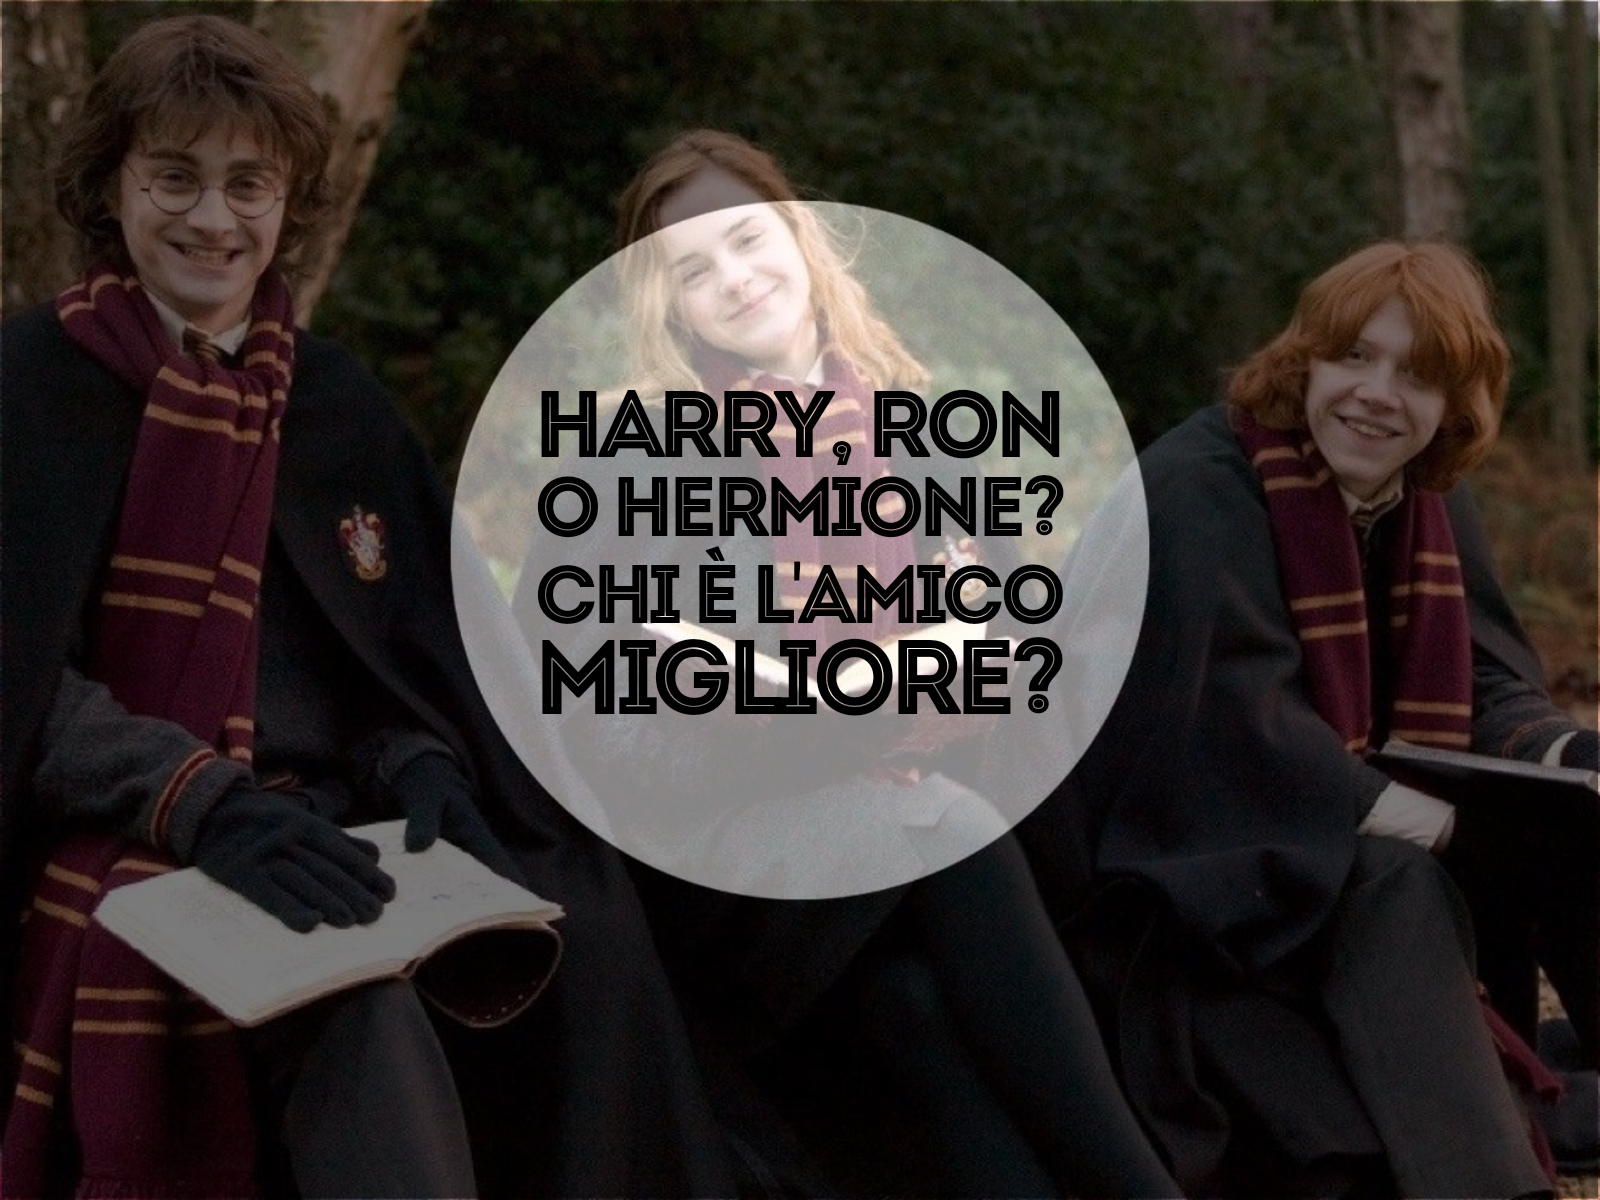 harry ron o hermione, chi è l'amico migliore?